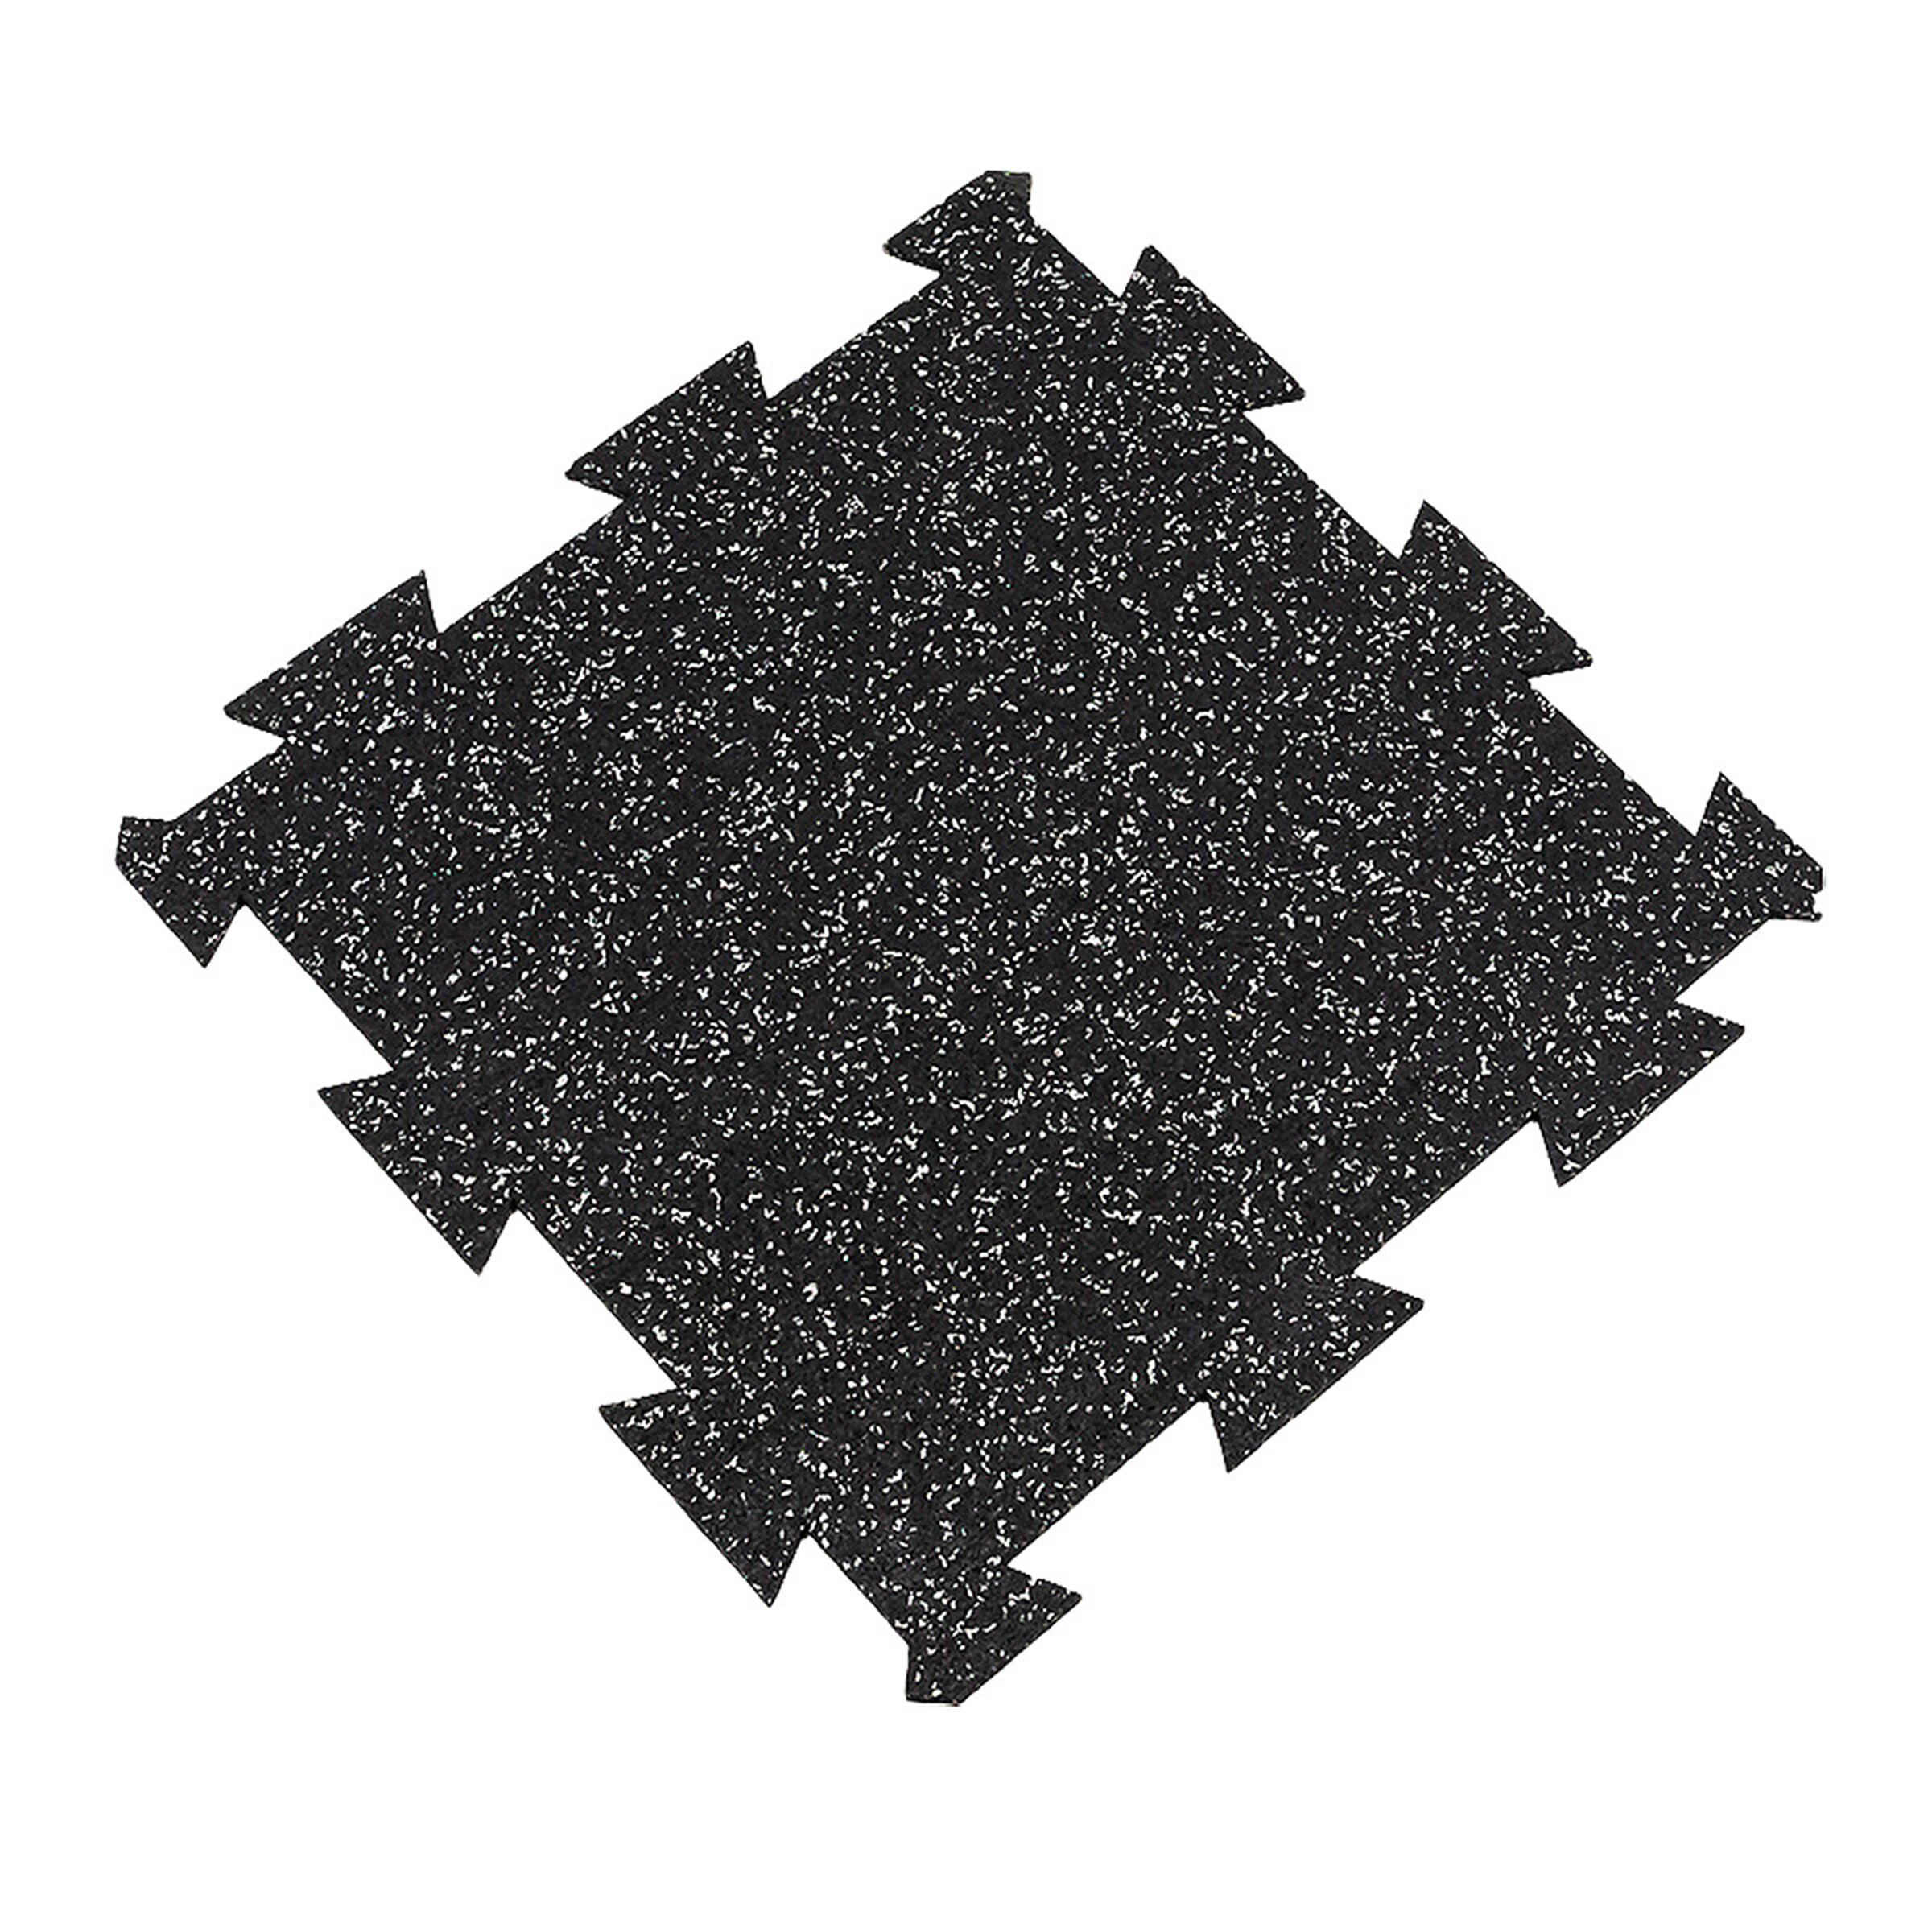 Černo-bílá gumová puzzle modulová dlažba FLOMA SF1050 FitFlo - délka 50 cm, šířka 50 cm, výška 0,8 cm